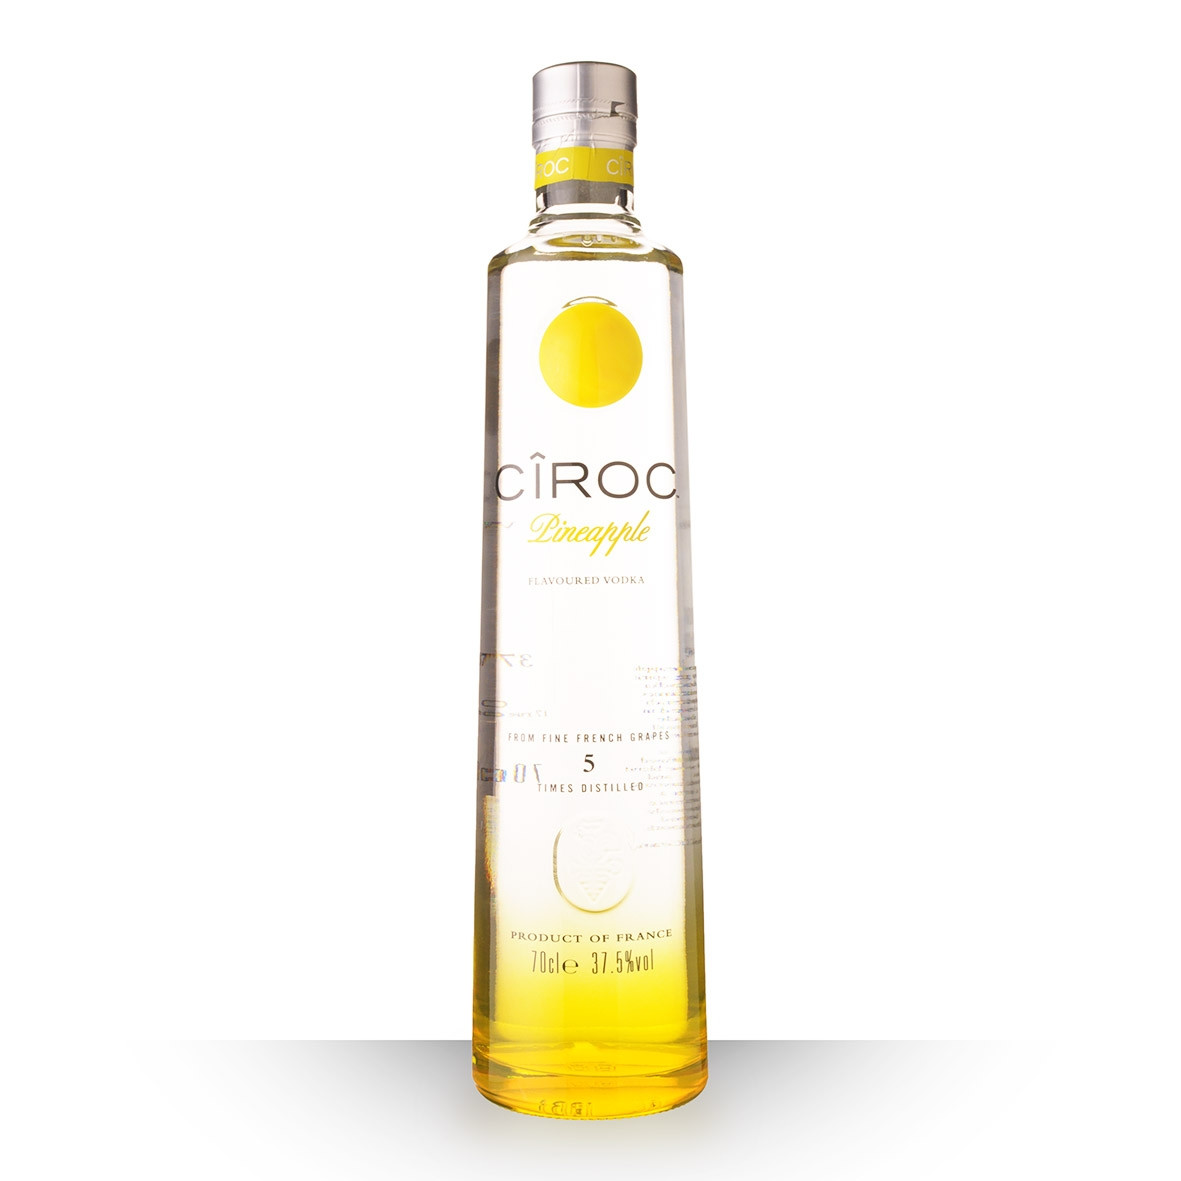 Acheter de la Vodka Ciroc Pineapple 70cl sur notre site - Odyssee-vins